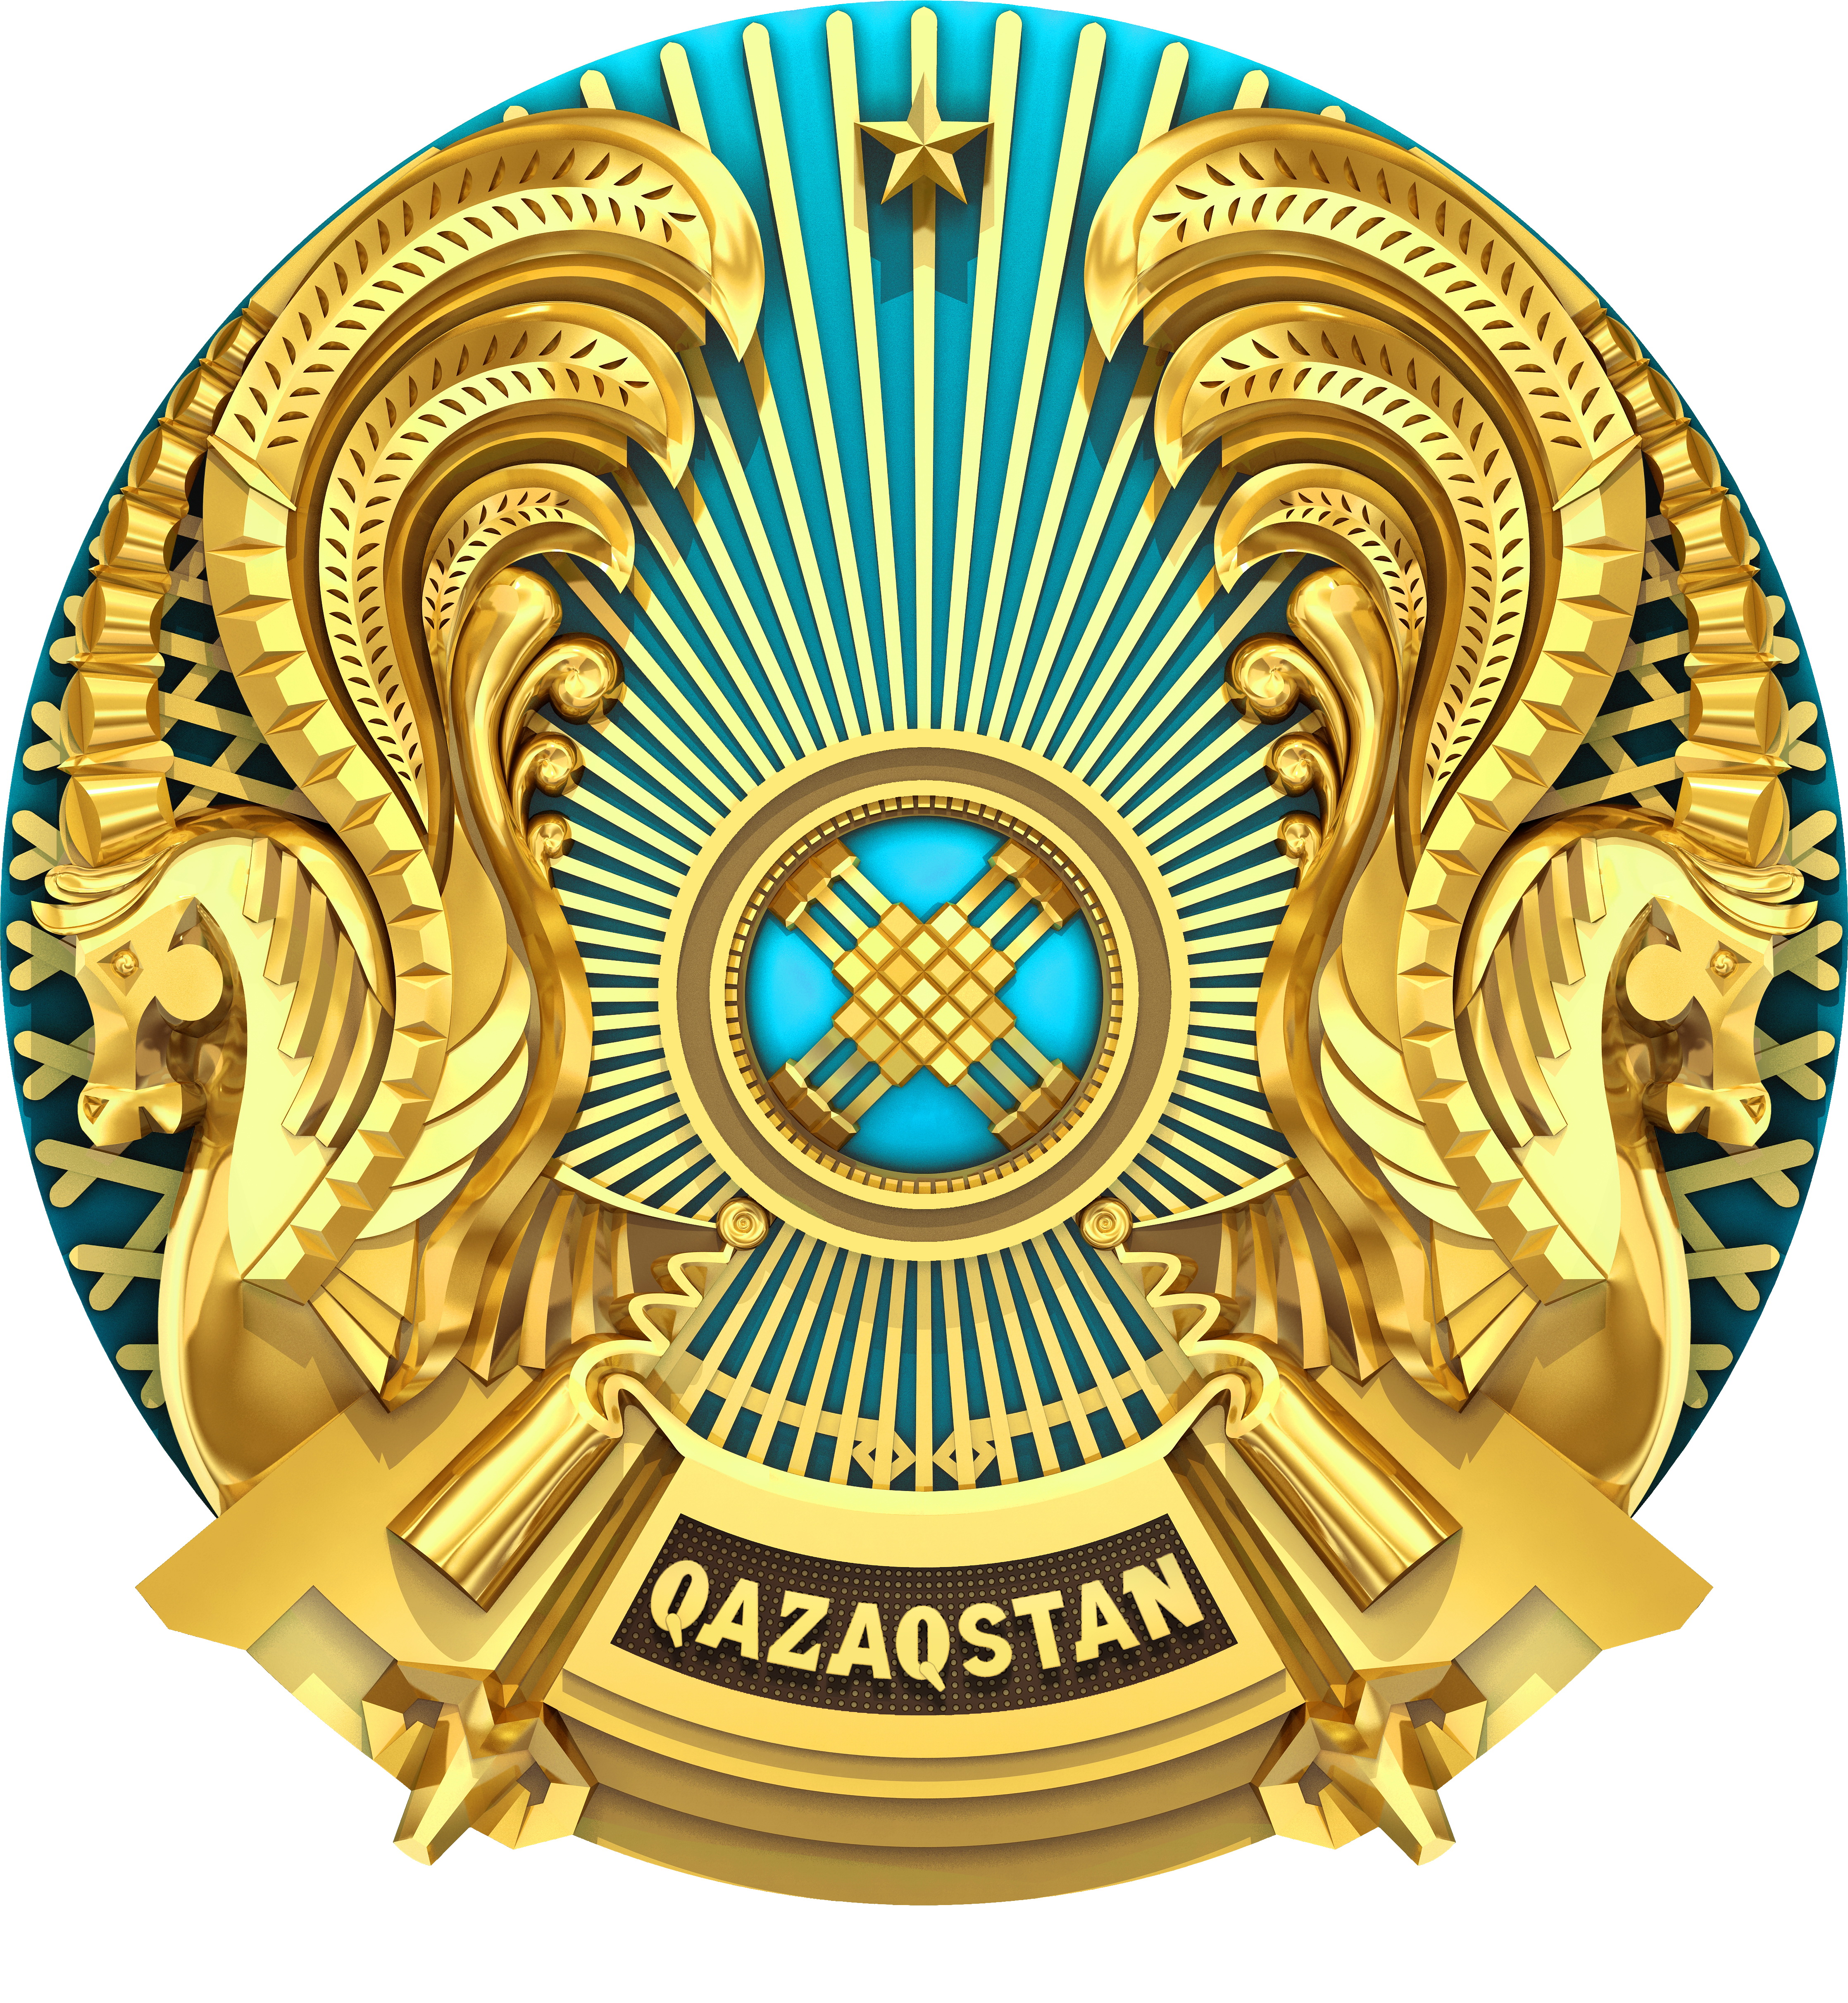 今天是哈萨克斯坦国家象征日